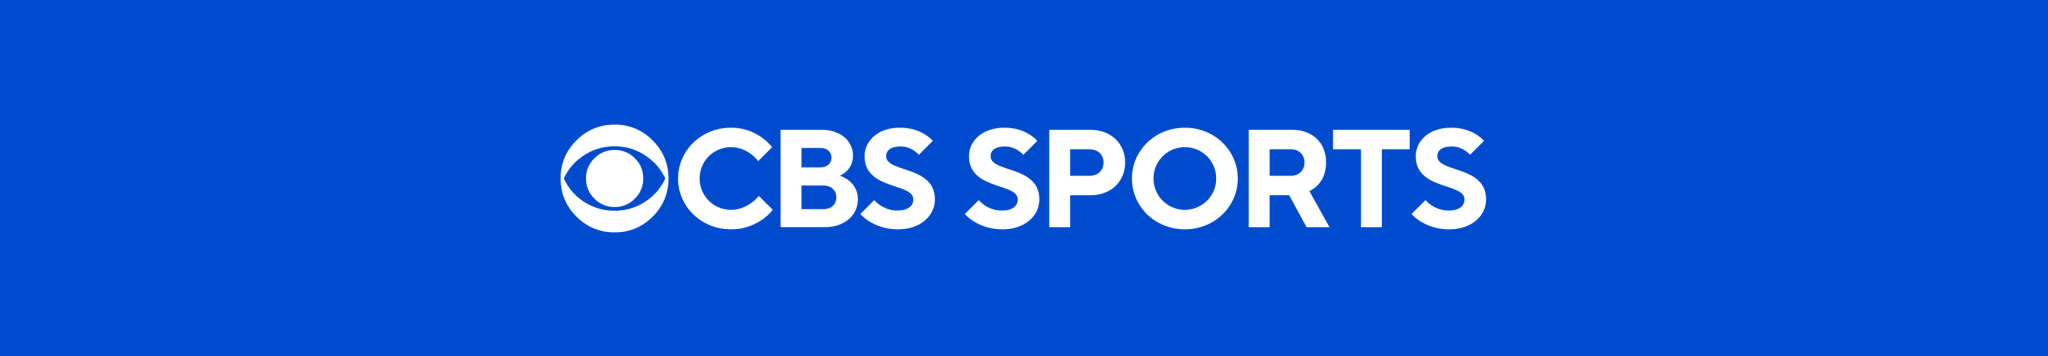 Accessoires de sport CBS